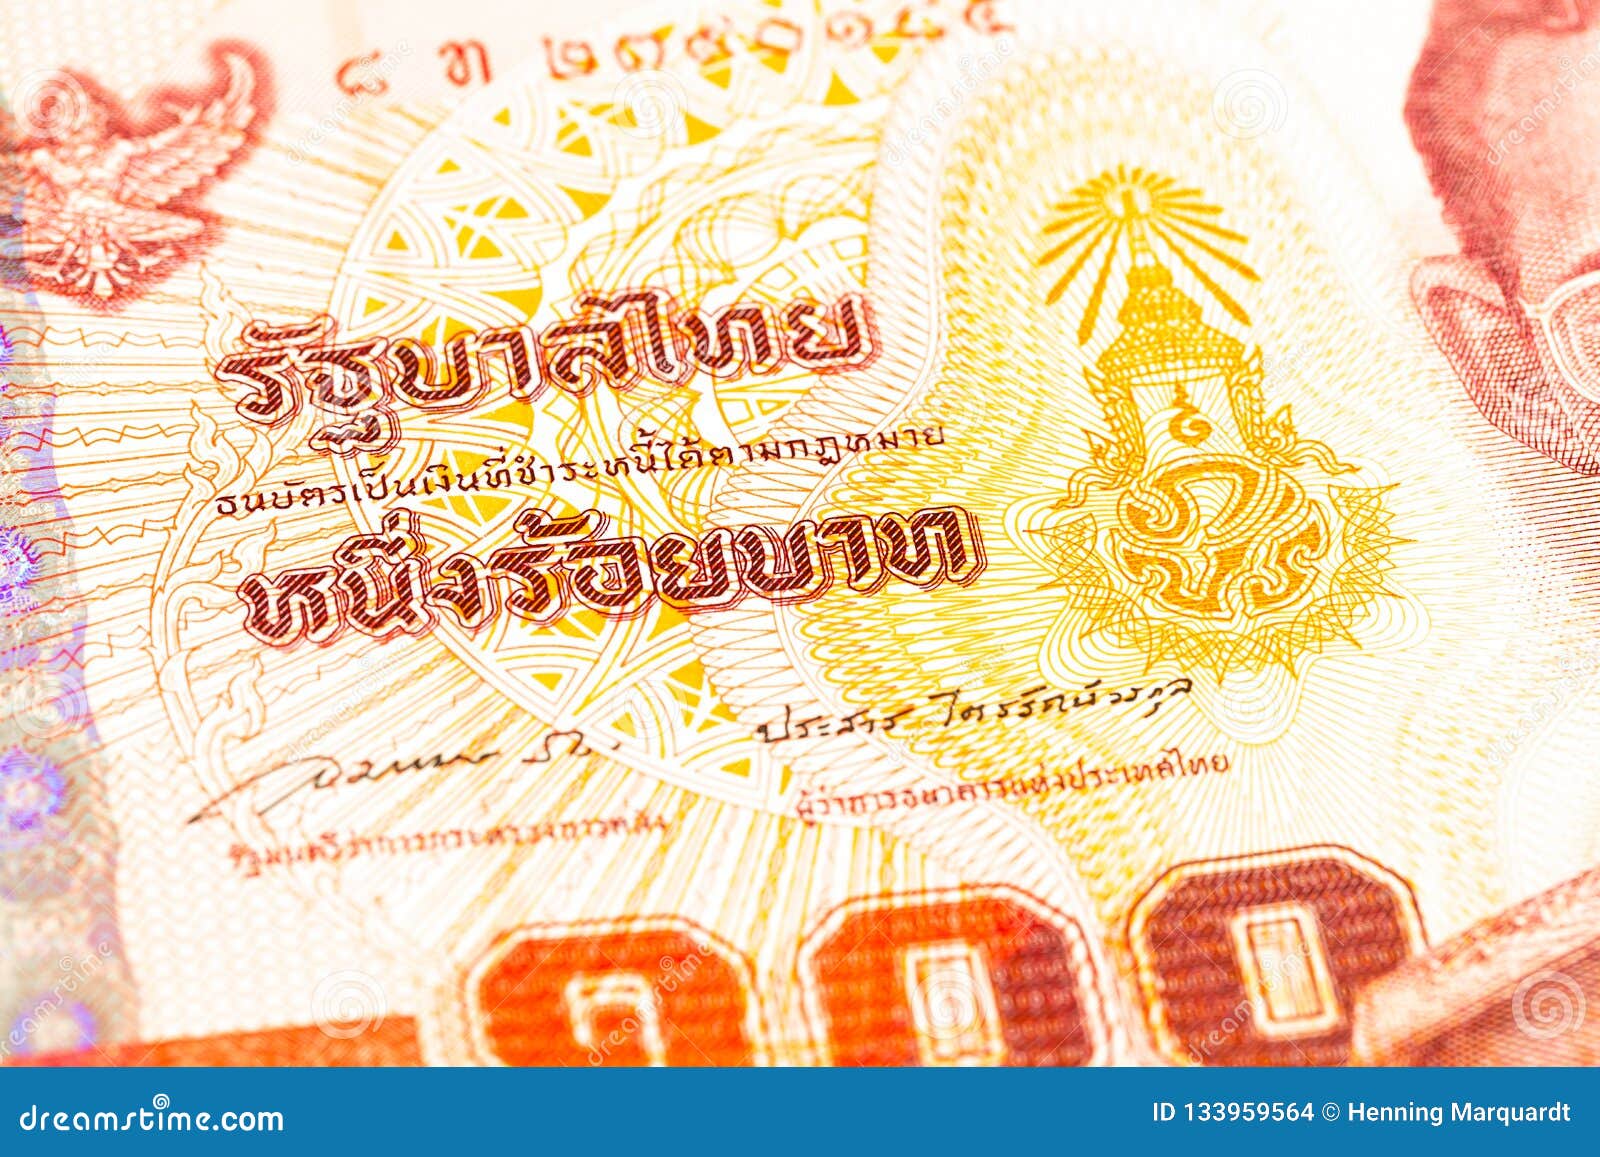 （3張一標）泰國50泰銖 泰皇紀念鈔 98新。鈔號碼隨機出貨。（3張一標）品相如圖 售出無退 | Yahoo奇摩拍賣